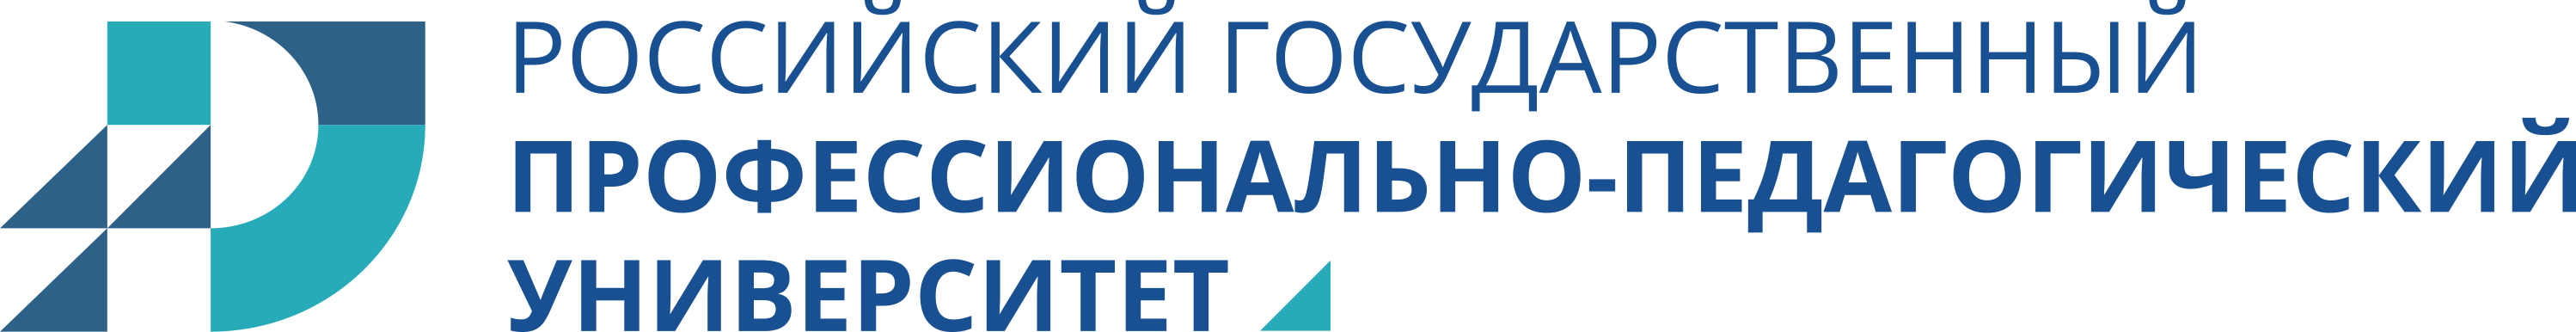 Логотип РГППУ